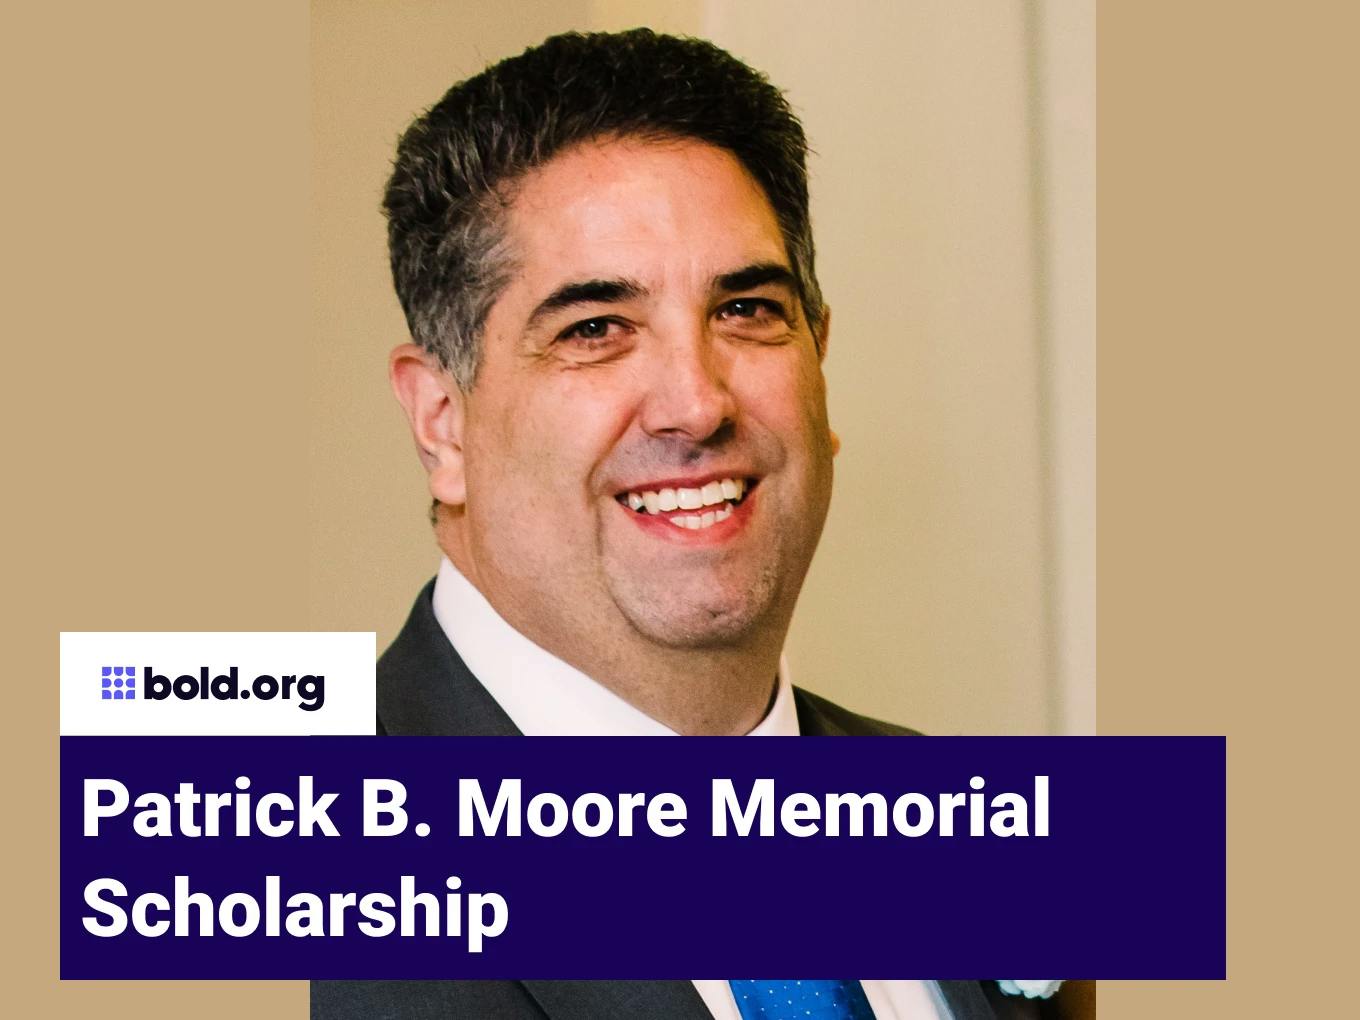 Patrick B. Moore Memorial Scholarship